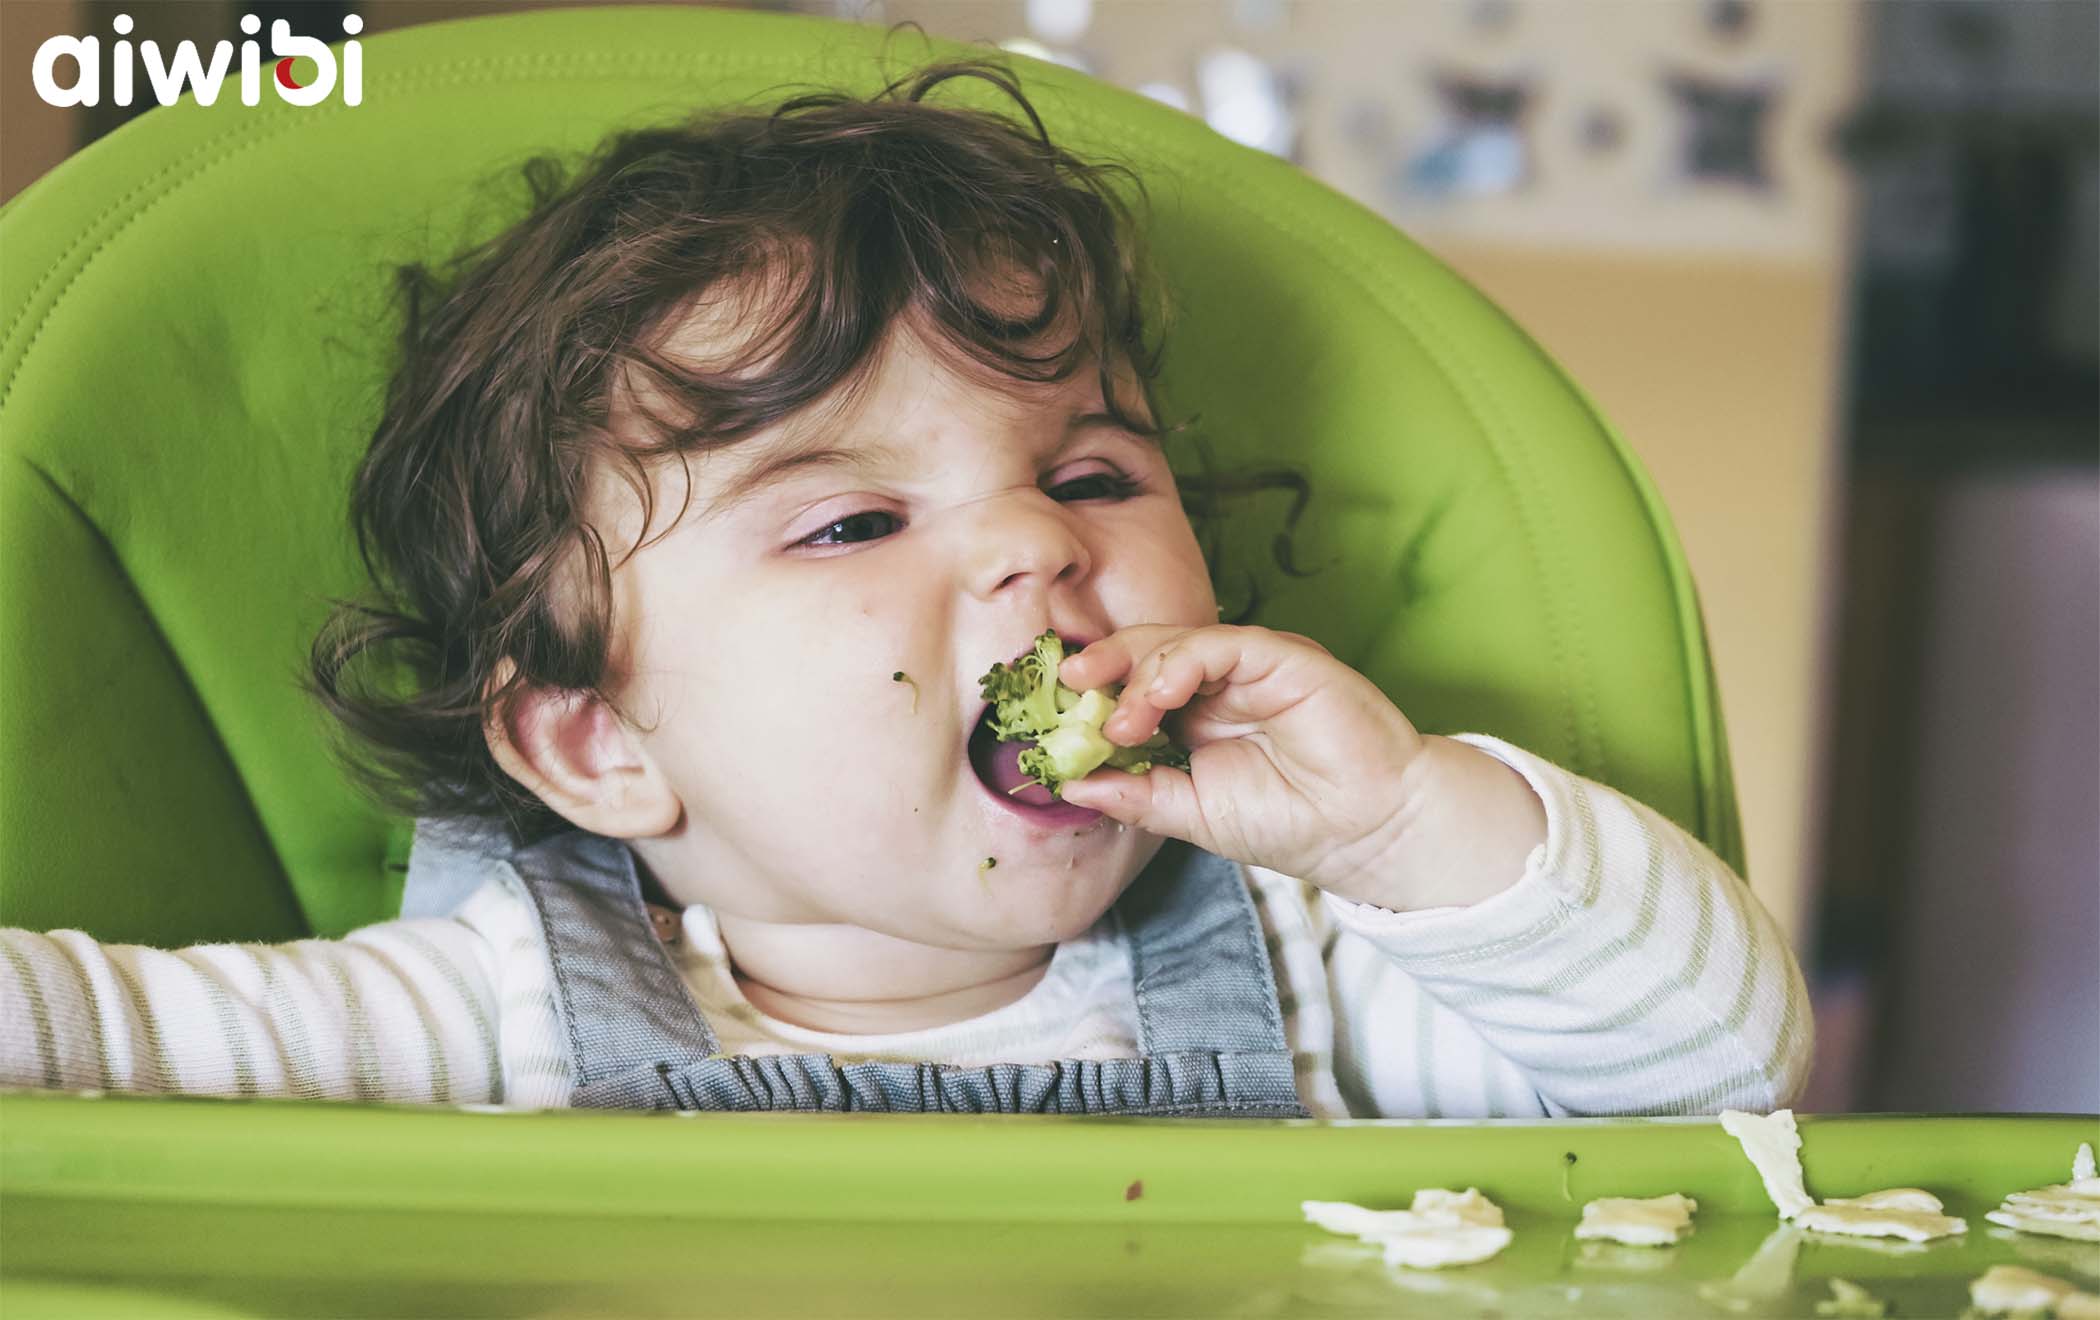 ثلاثة تغييرات أساسية في النظام الغذائي يجب على الآباء معرفتها بعد أن يبلغ طفلهم عامًا واحدًا